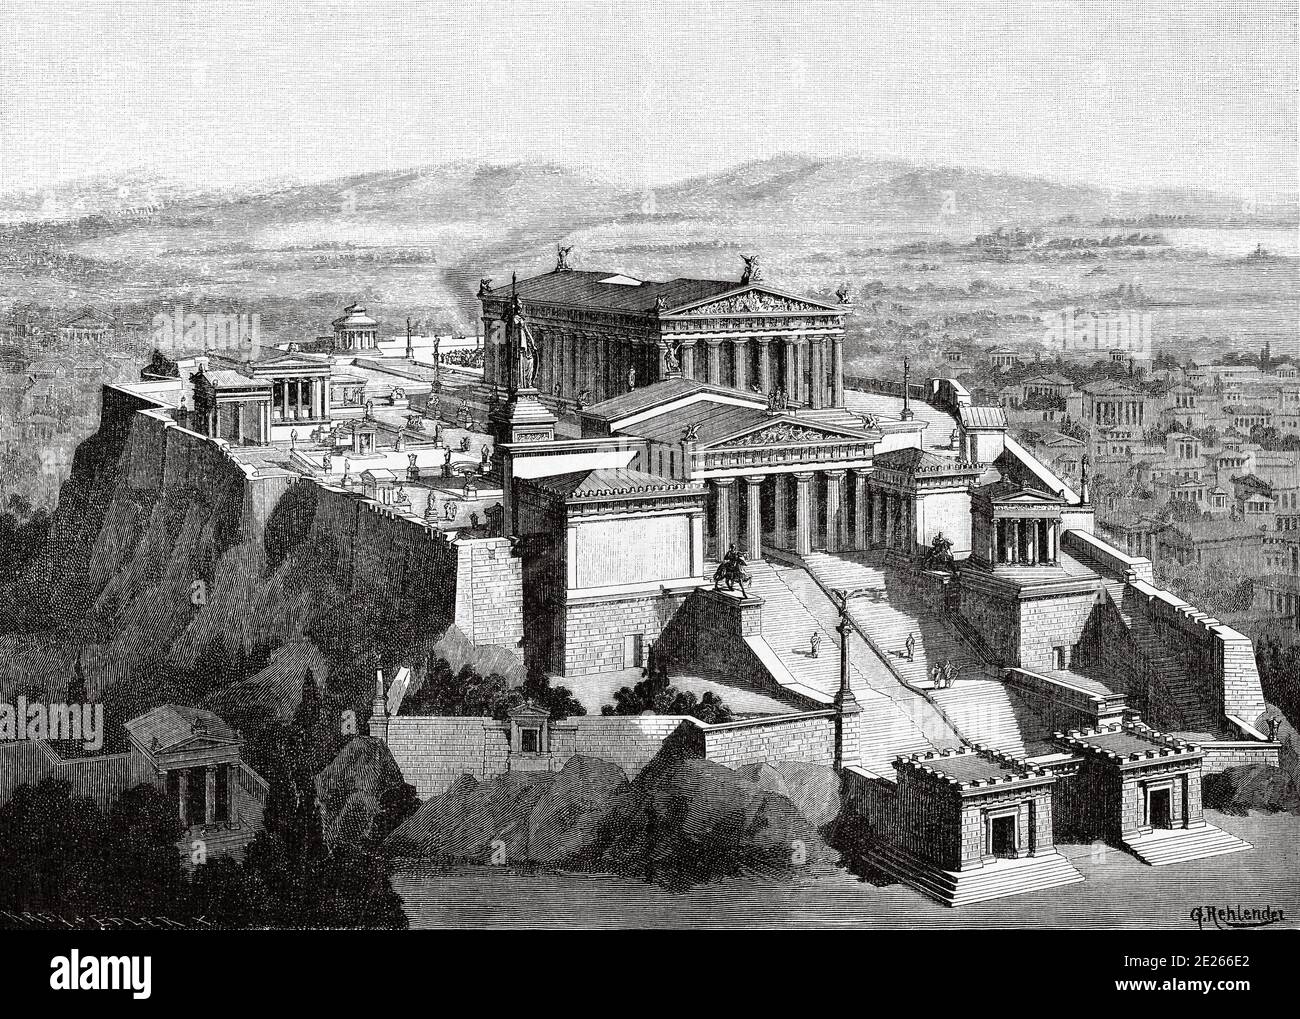 Die propileos waren der große Eingang zur Akropolis von Athen. Griechenland antike Geschichte. Alte Gravurillustration aus dem Buch Universal History von Oscar Jager 1890 Stockfoto